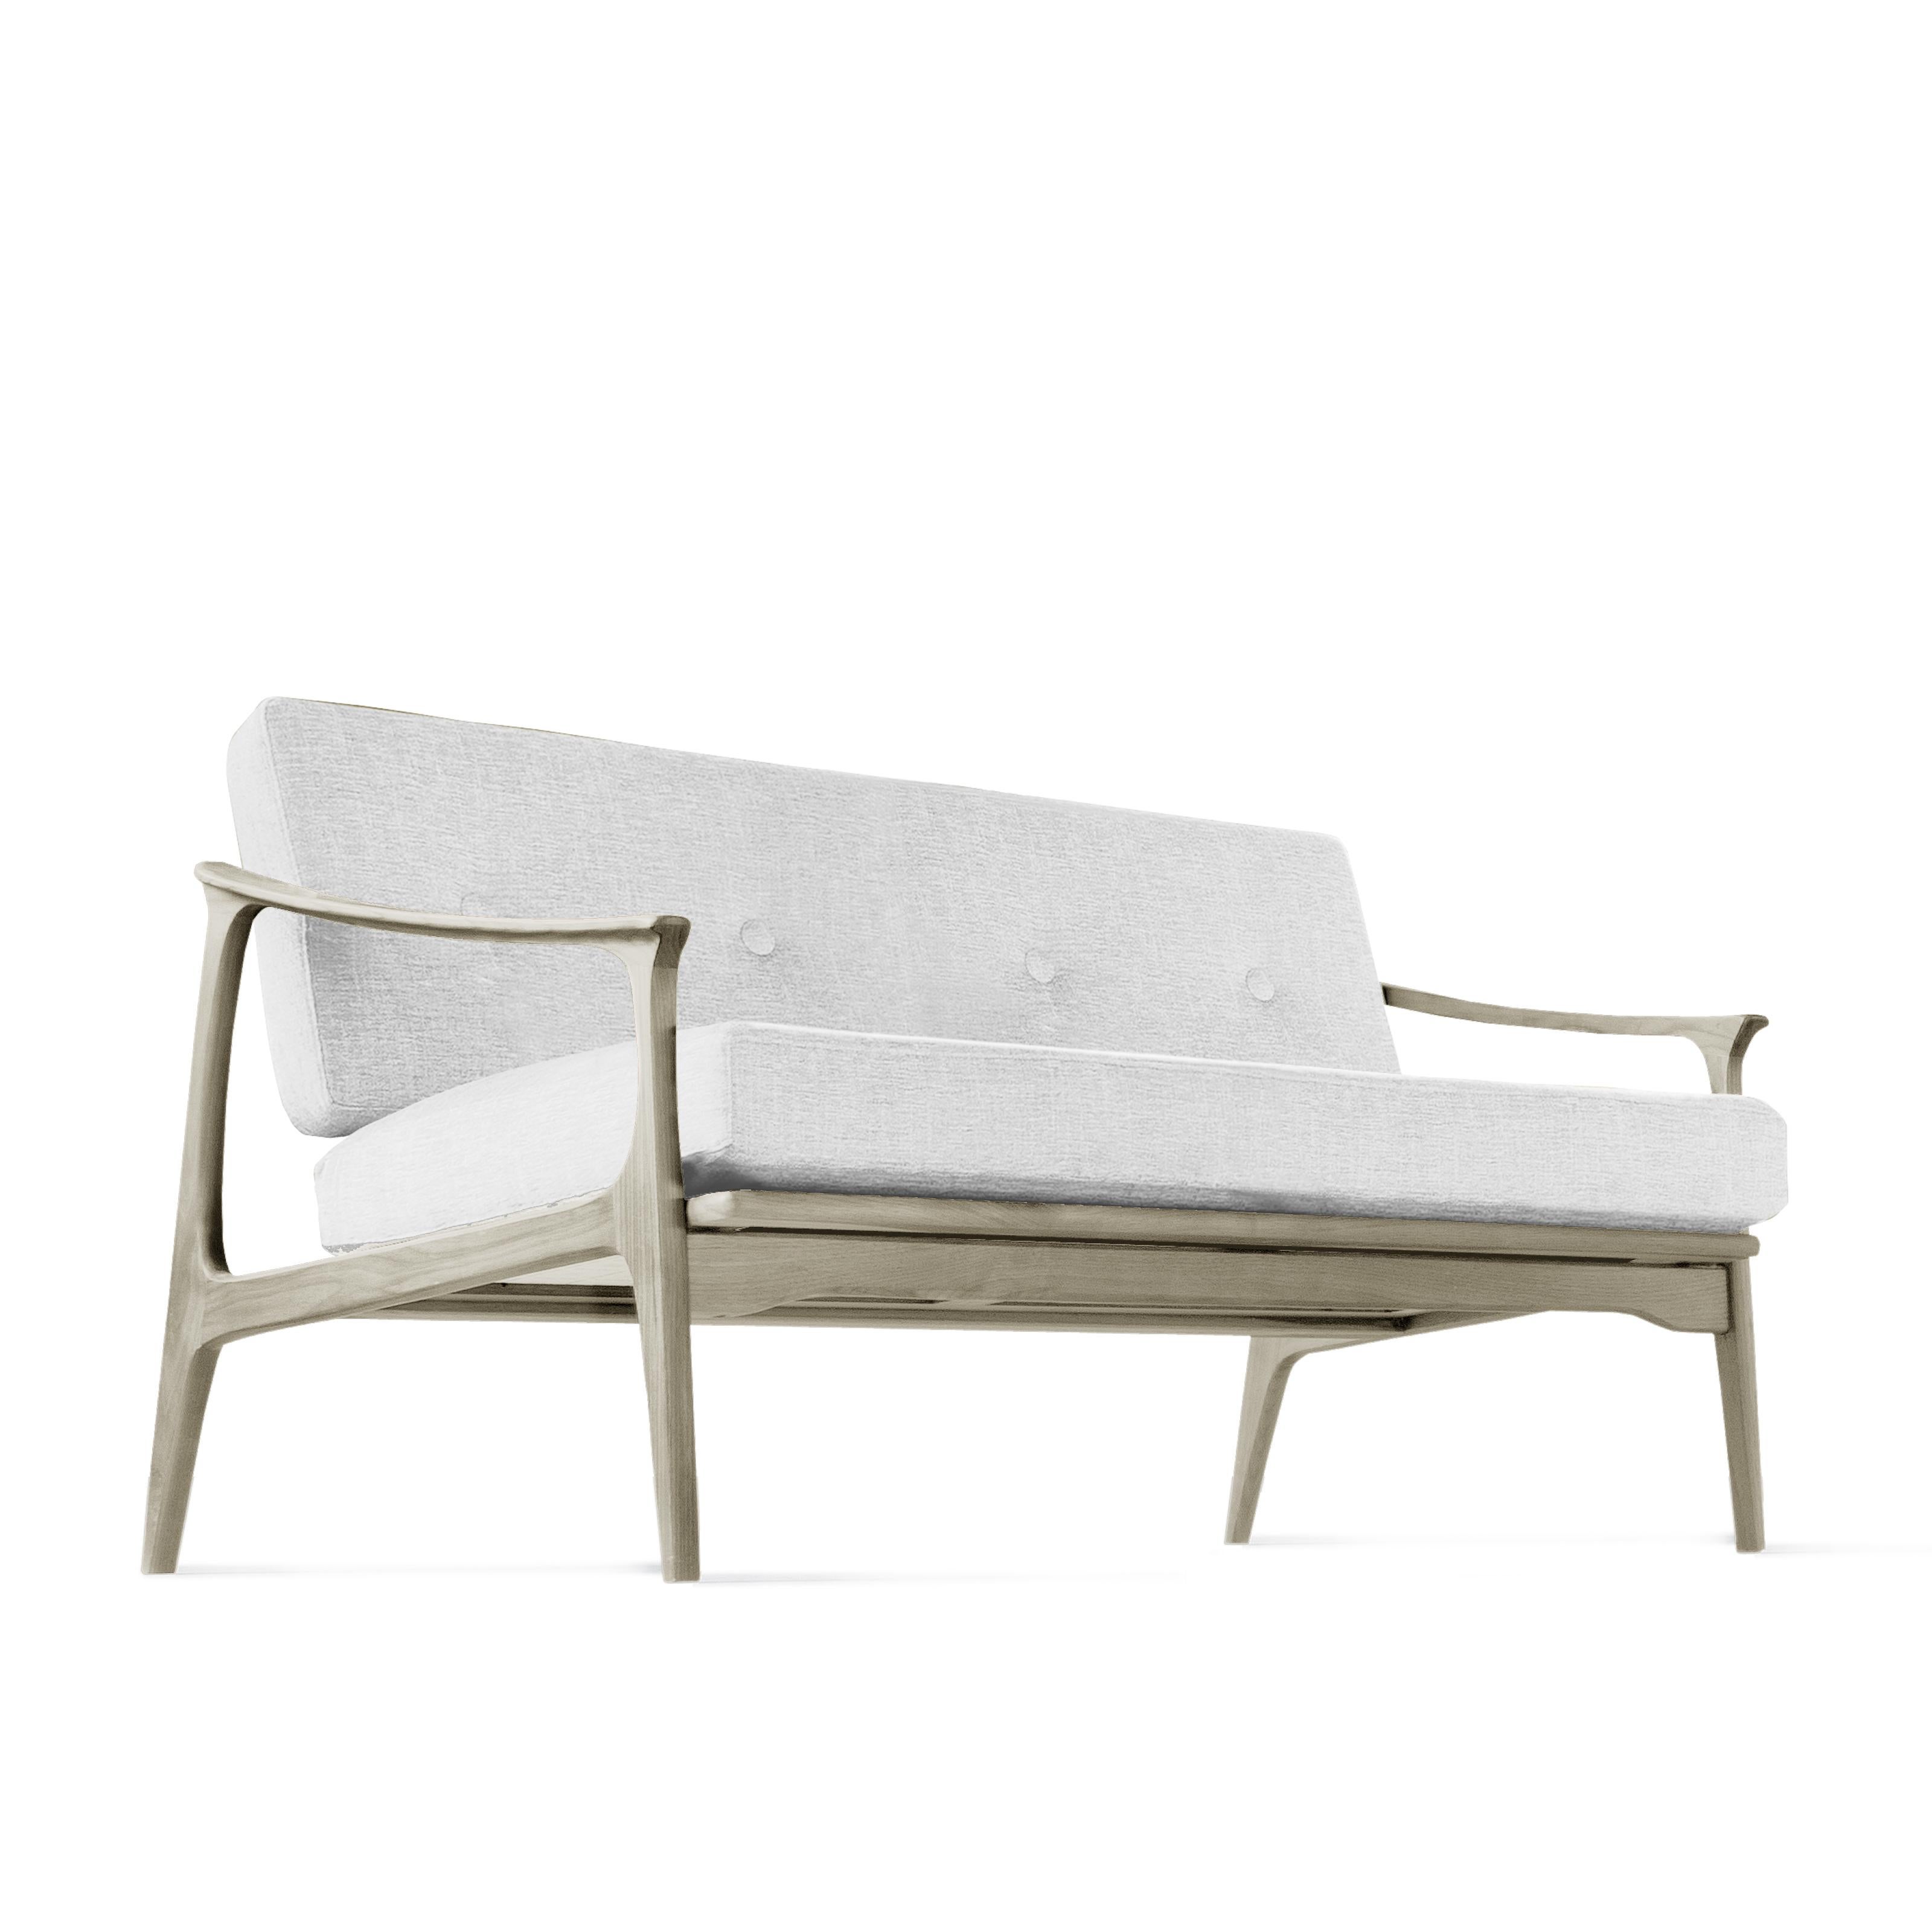 Das Sofa und der Sessel Quiete sind das Ergebnis der Verbindung von raffiniertem italienischem Design und handwerklichem Können. Die Struktur ist aus hochwertigem, massivem Nussbaumholz und wird in Italien von erfahrenen Händen mit Leidenschaft